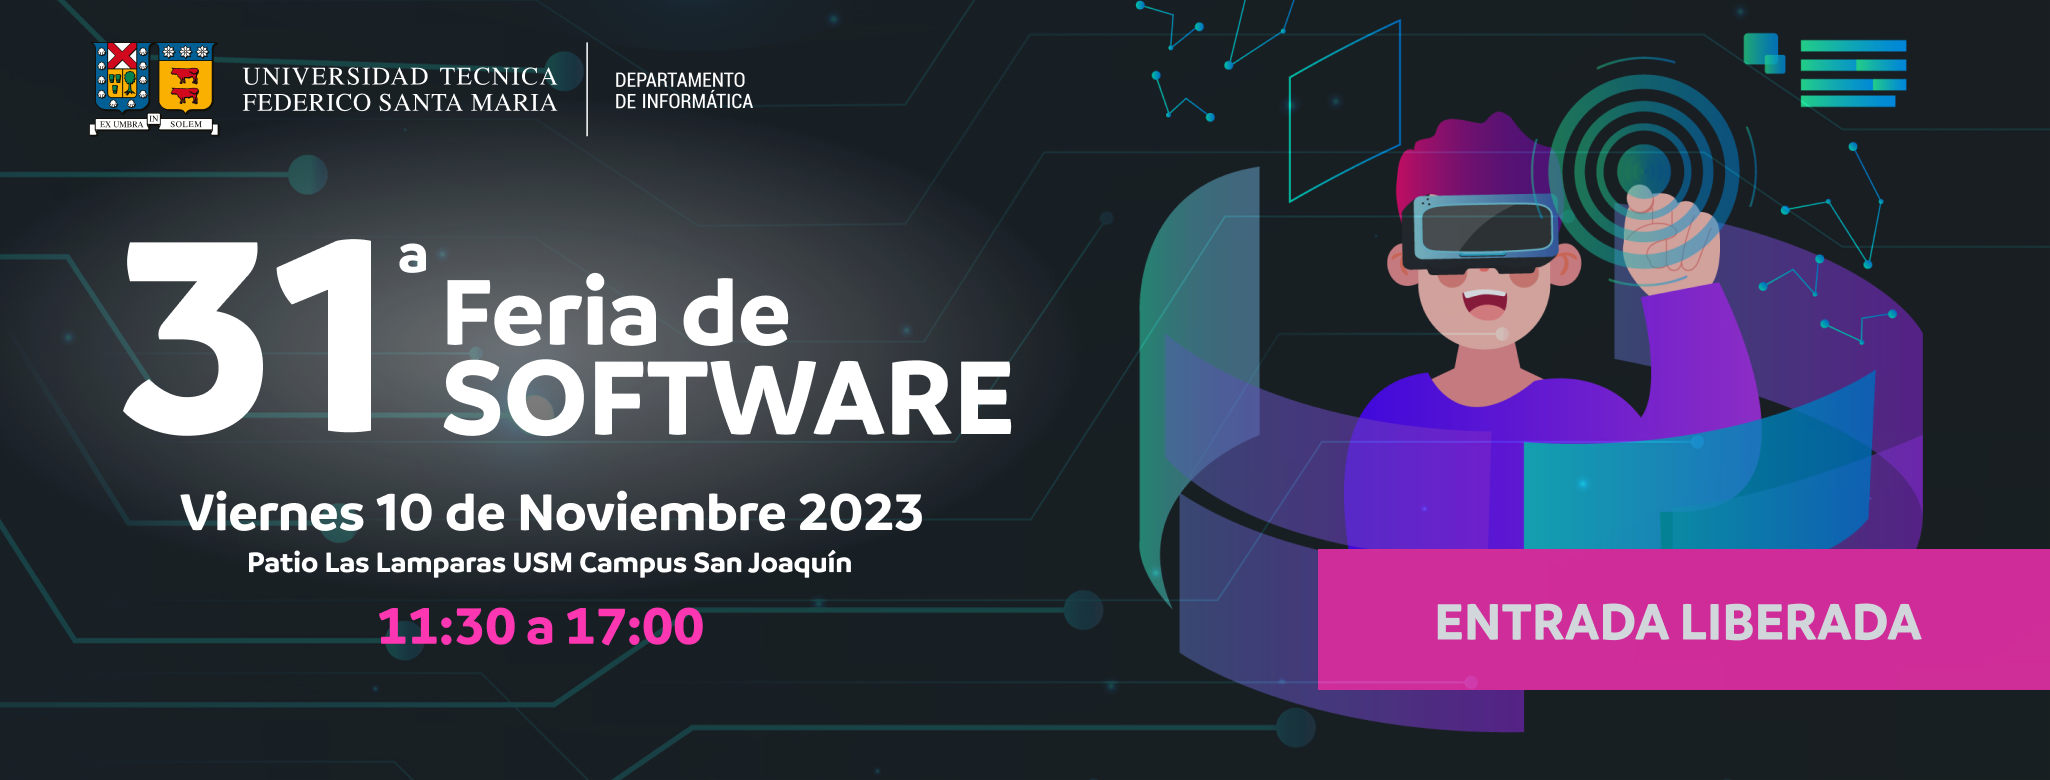 30º Feria de Software 2022